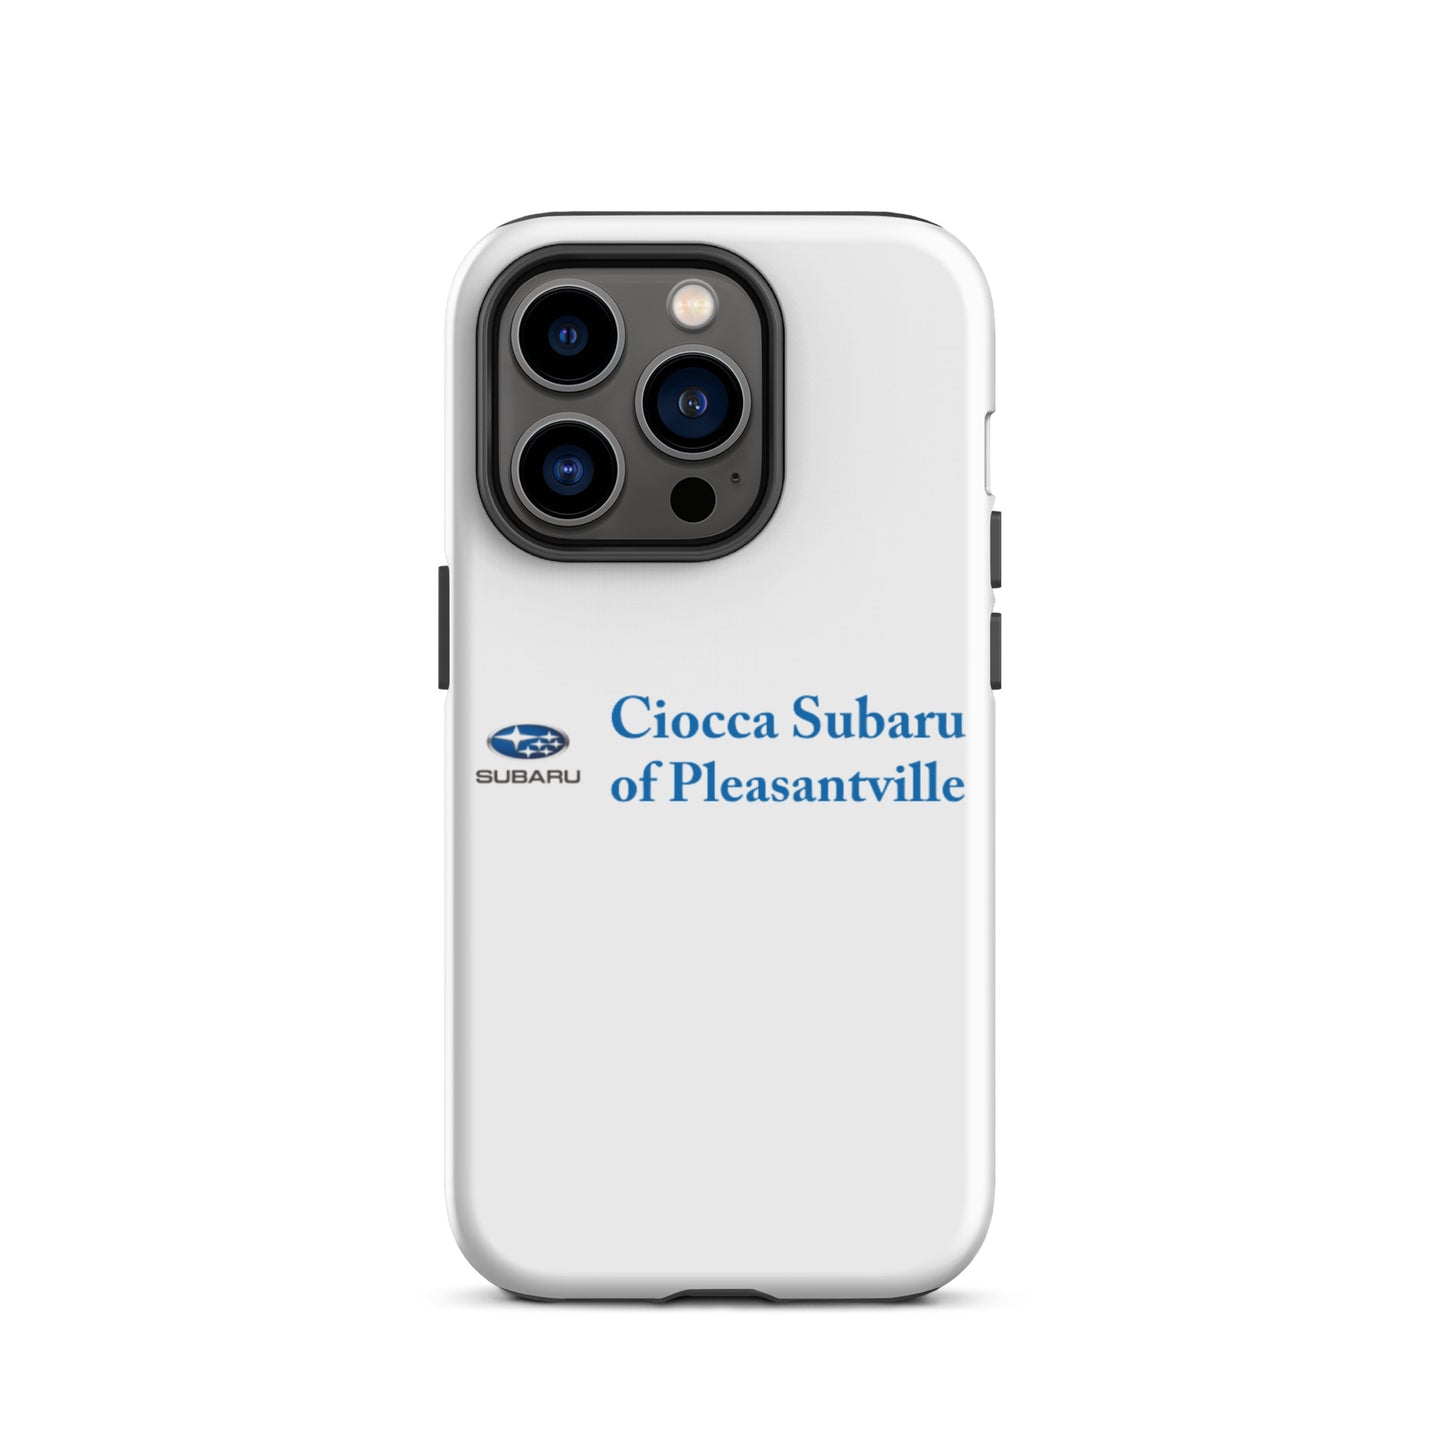 Tough Case for iPhone® - Subaru of Pleasantville